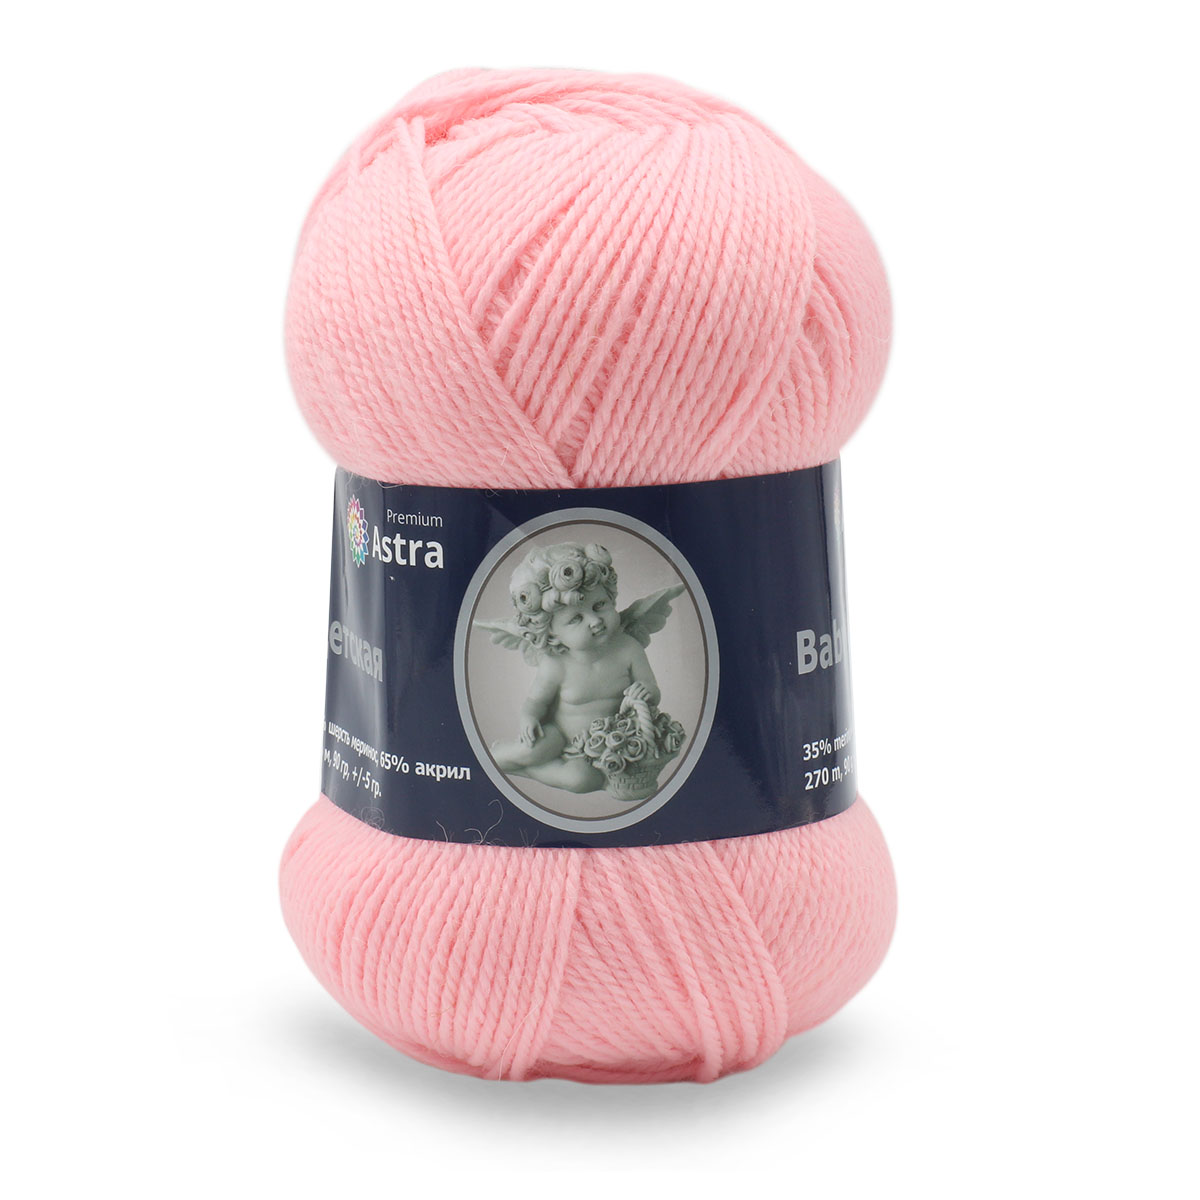 Пряжа для вязания Astra Premium детская из акрила и шерсти для детских вещей 90 гр 270 м 055 св.розовый 3 мотка - фото 3